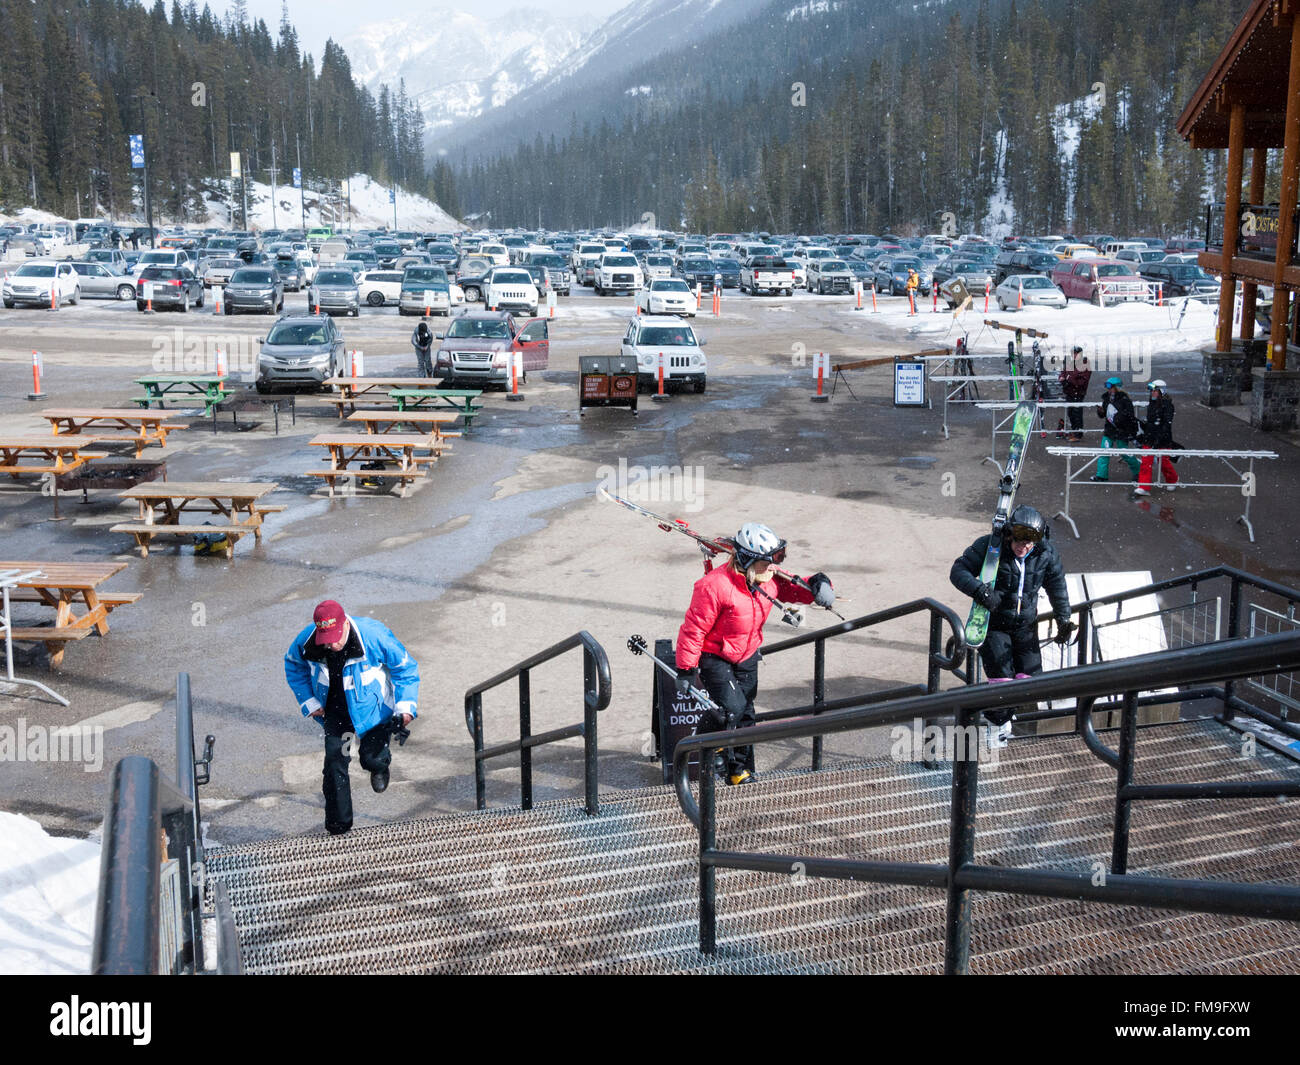 Per gli sciatori e il parcheggio al Sunshine Village resort sciistico Canada Banff Foto Stock